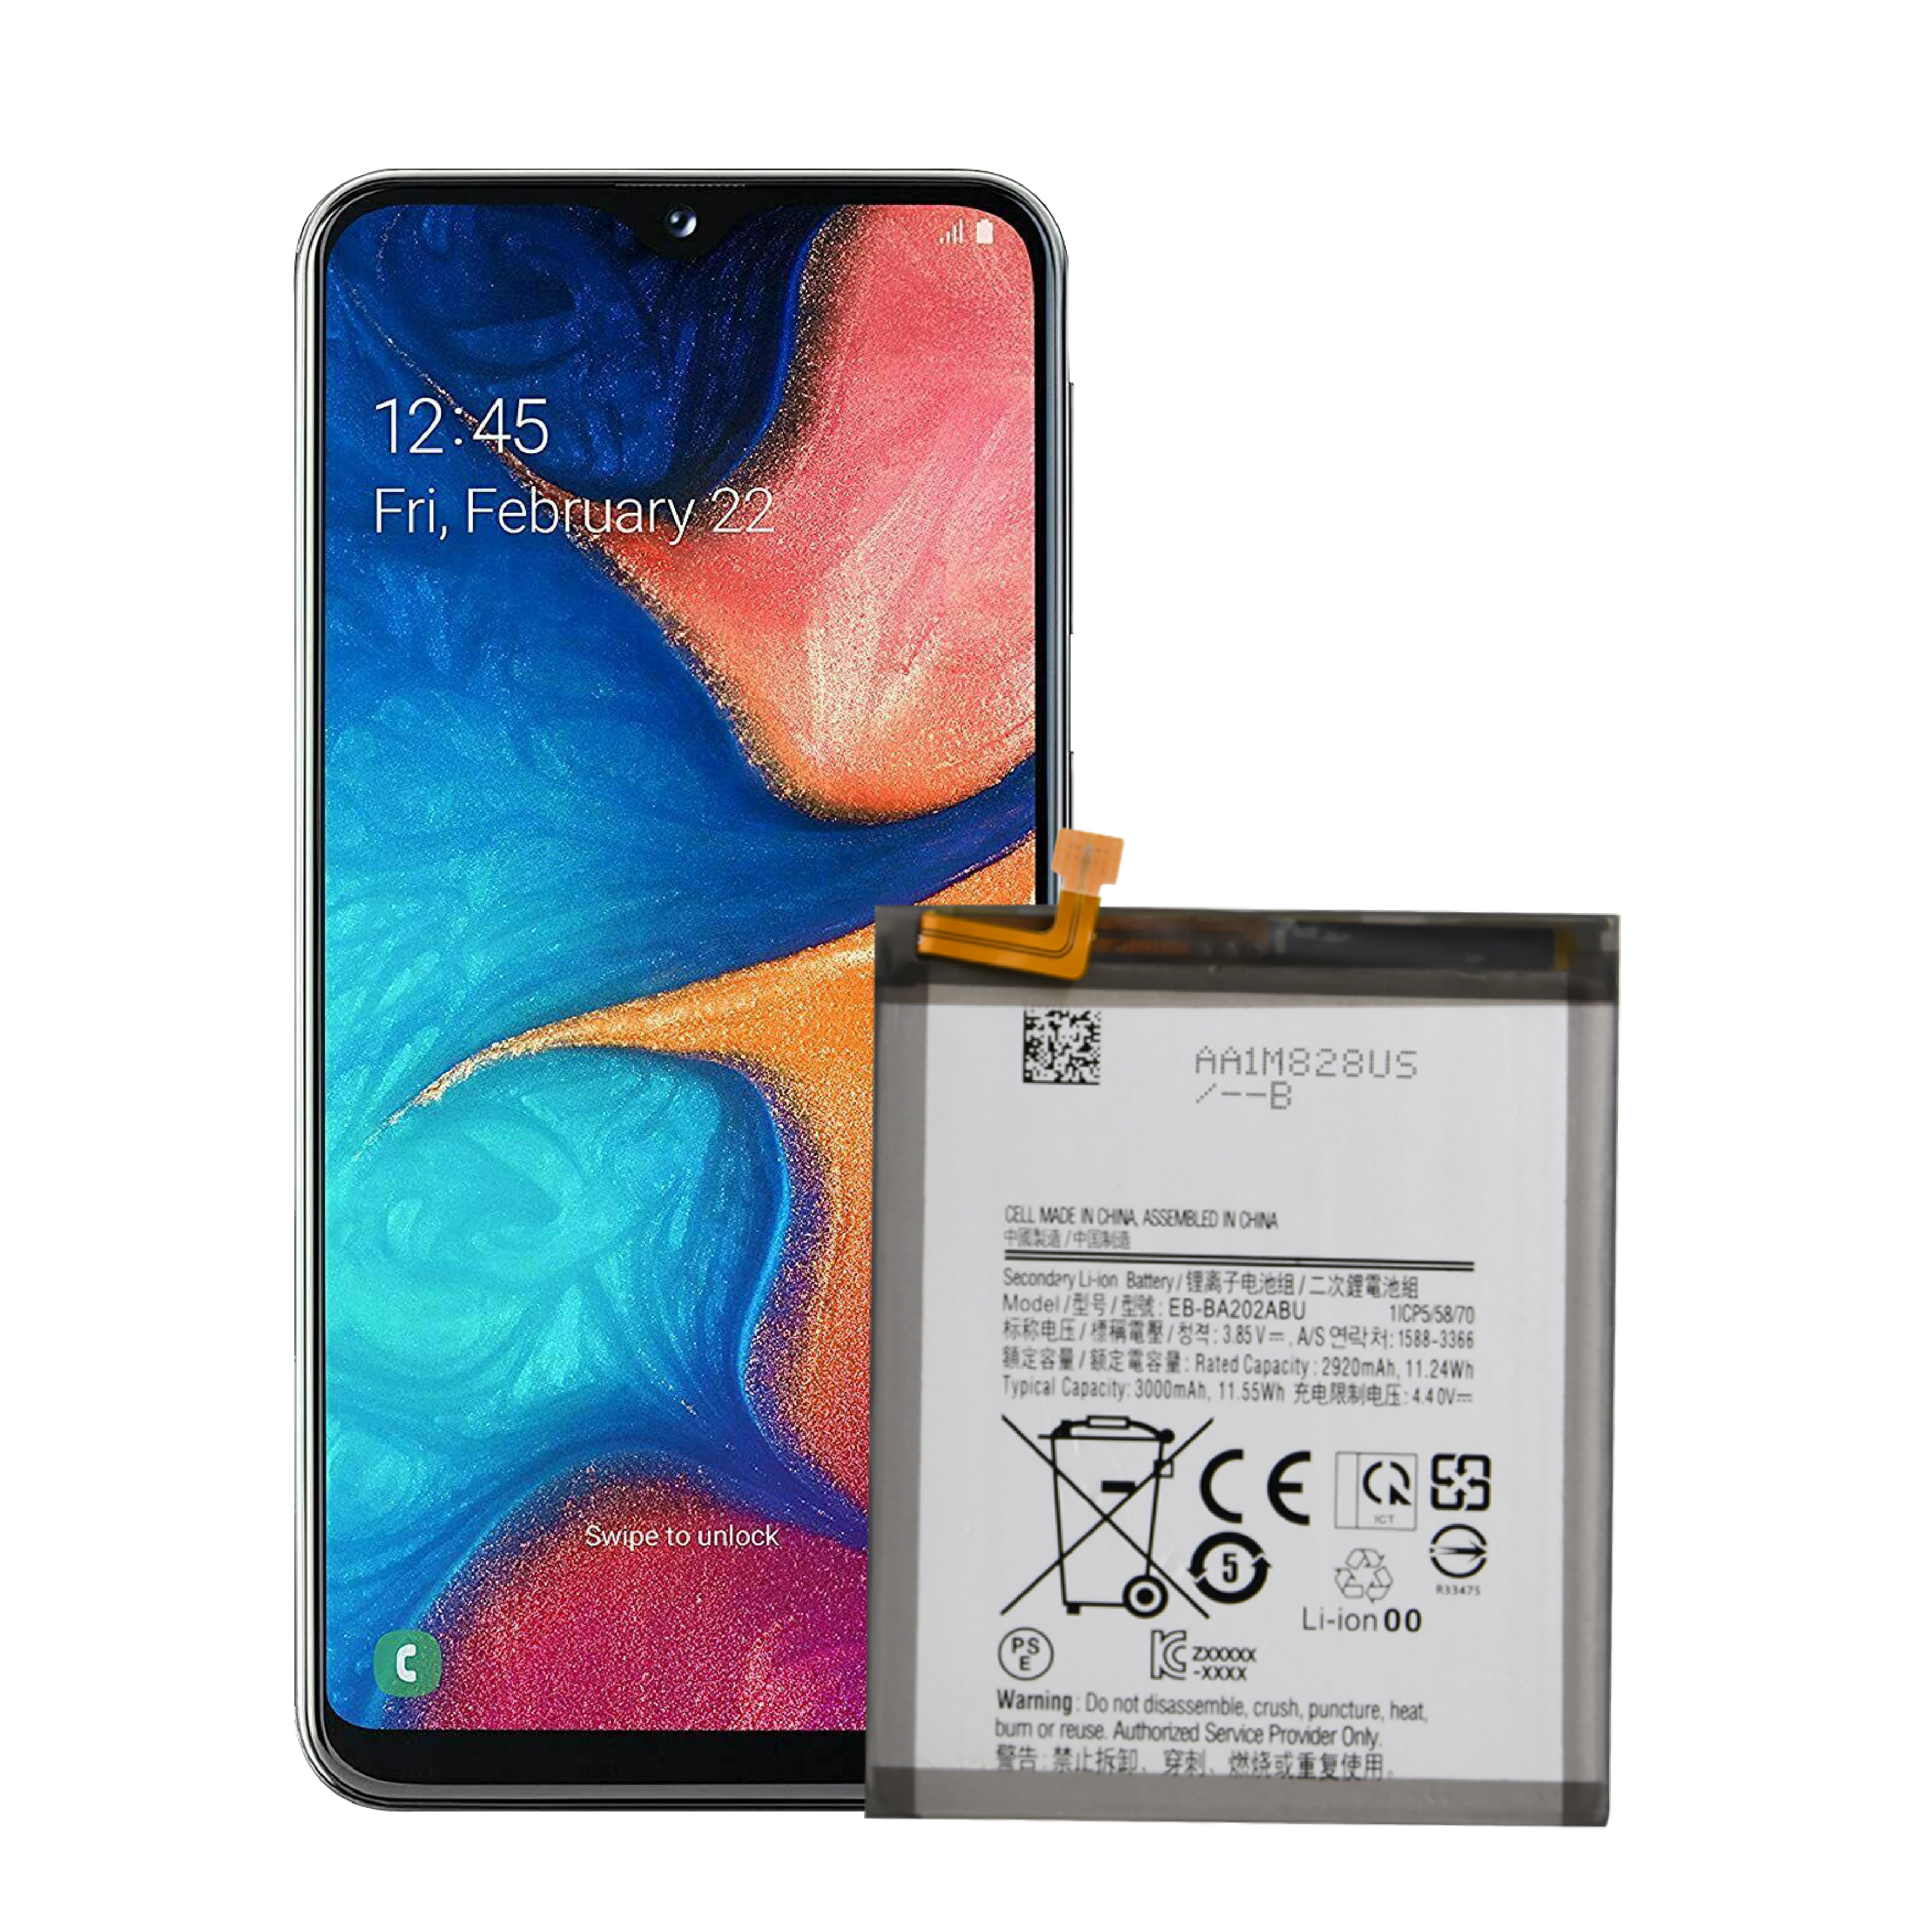 OEM nomaiņas pilnīgi jauns tālruņa akumulators ar ilgu darbības laiku Samsung A20 Edge akumulatoram